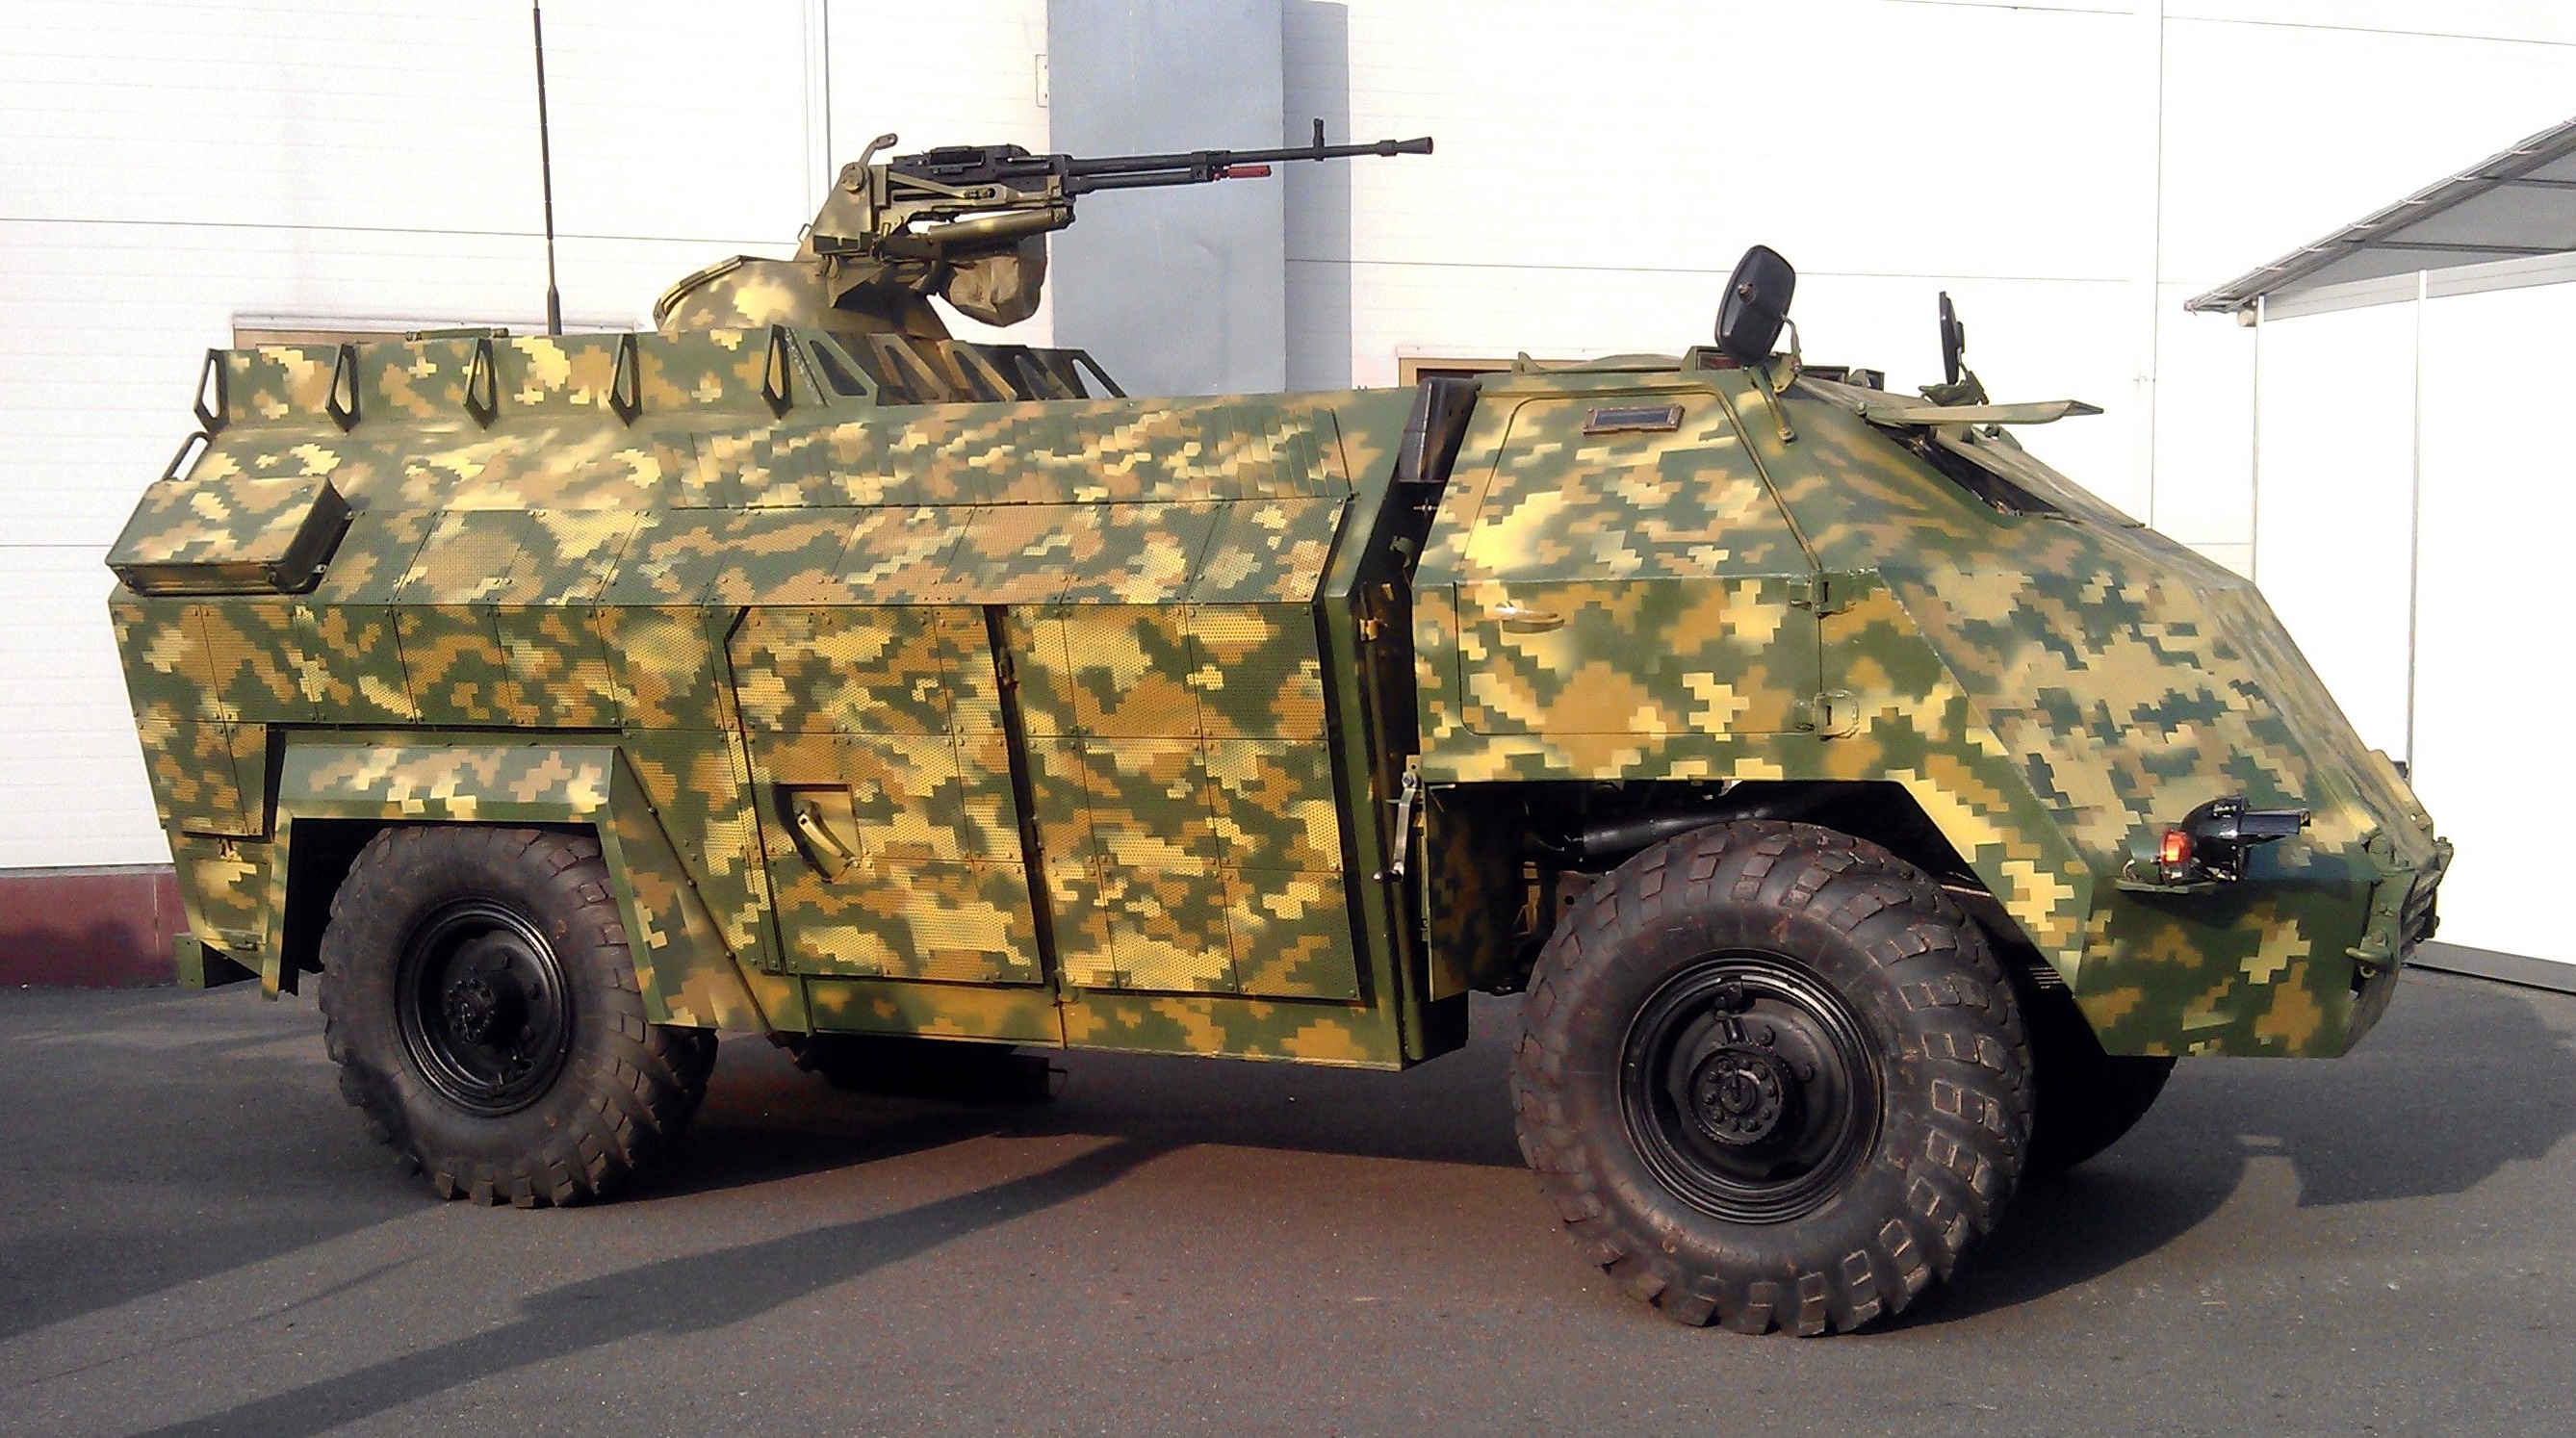 Las Fuerzas Armadas de Ucrania han mostrado un "arma secreta" en la guerra contra Rusia: un vehículo blindado ucraniano único "Gadfly", que está disponible en una sola copia.